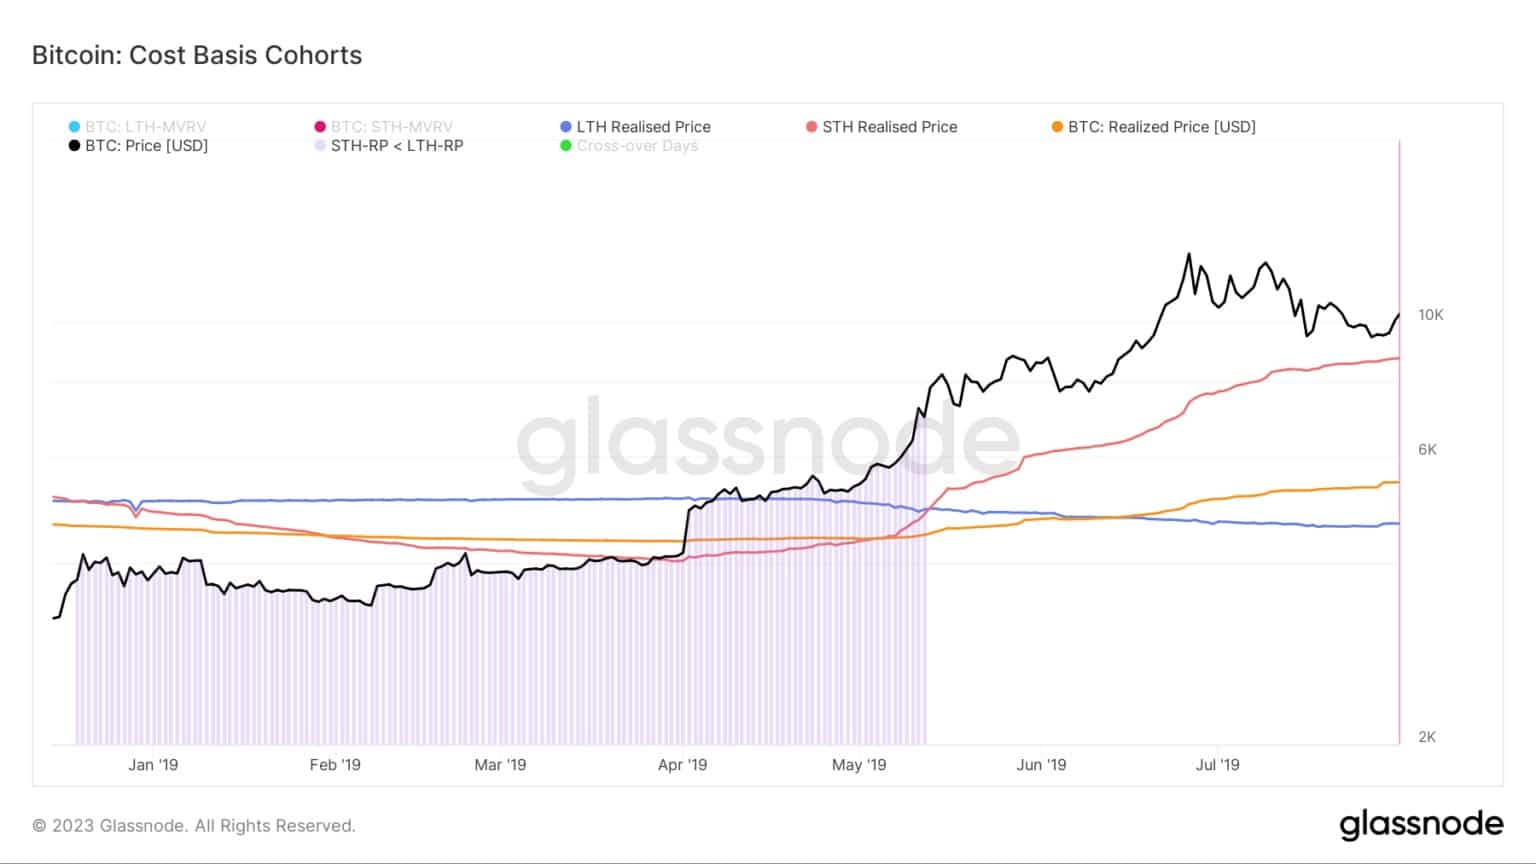 Grafiek met de kostenbasis voor Bitcoin cohorten tijdens de 2018/2019 berenmarkt (Bron: Glassnode)